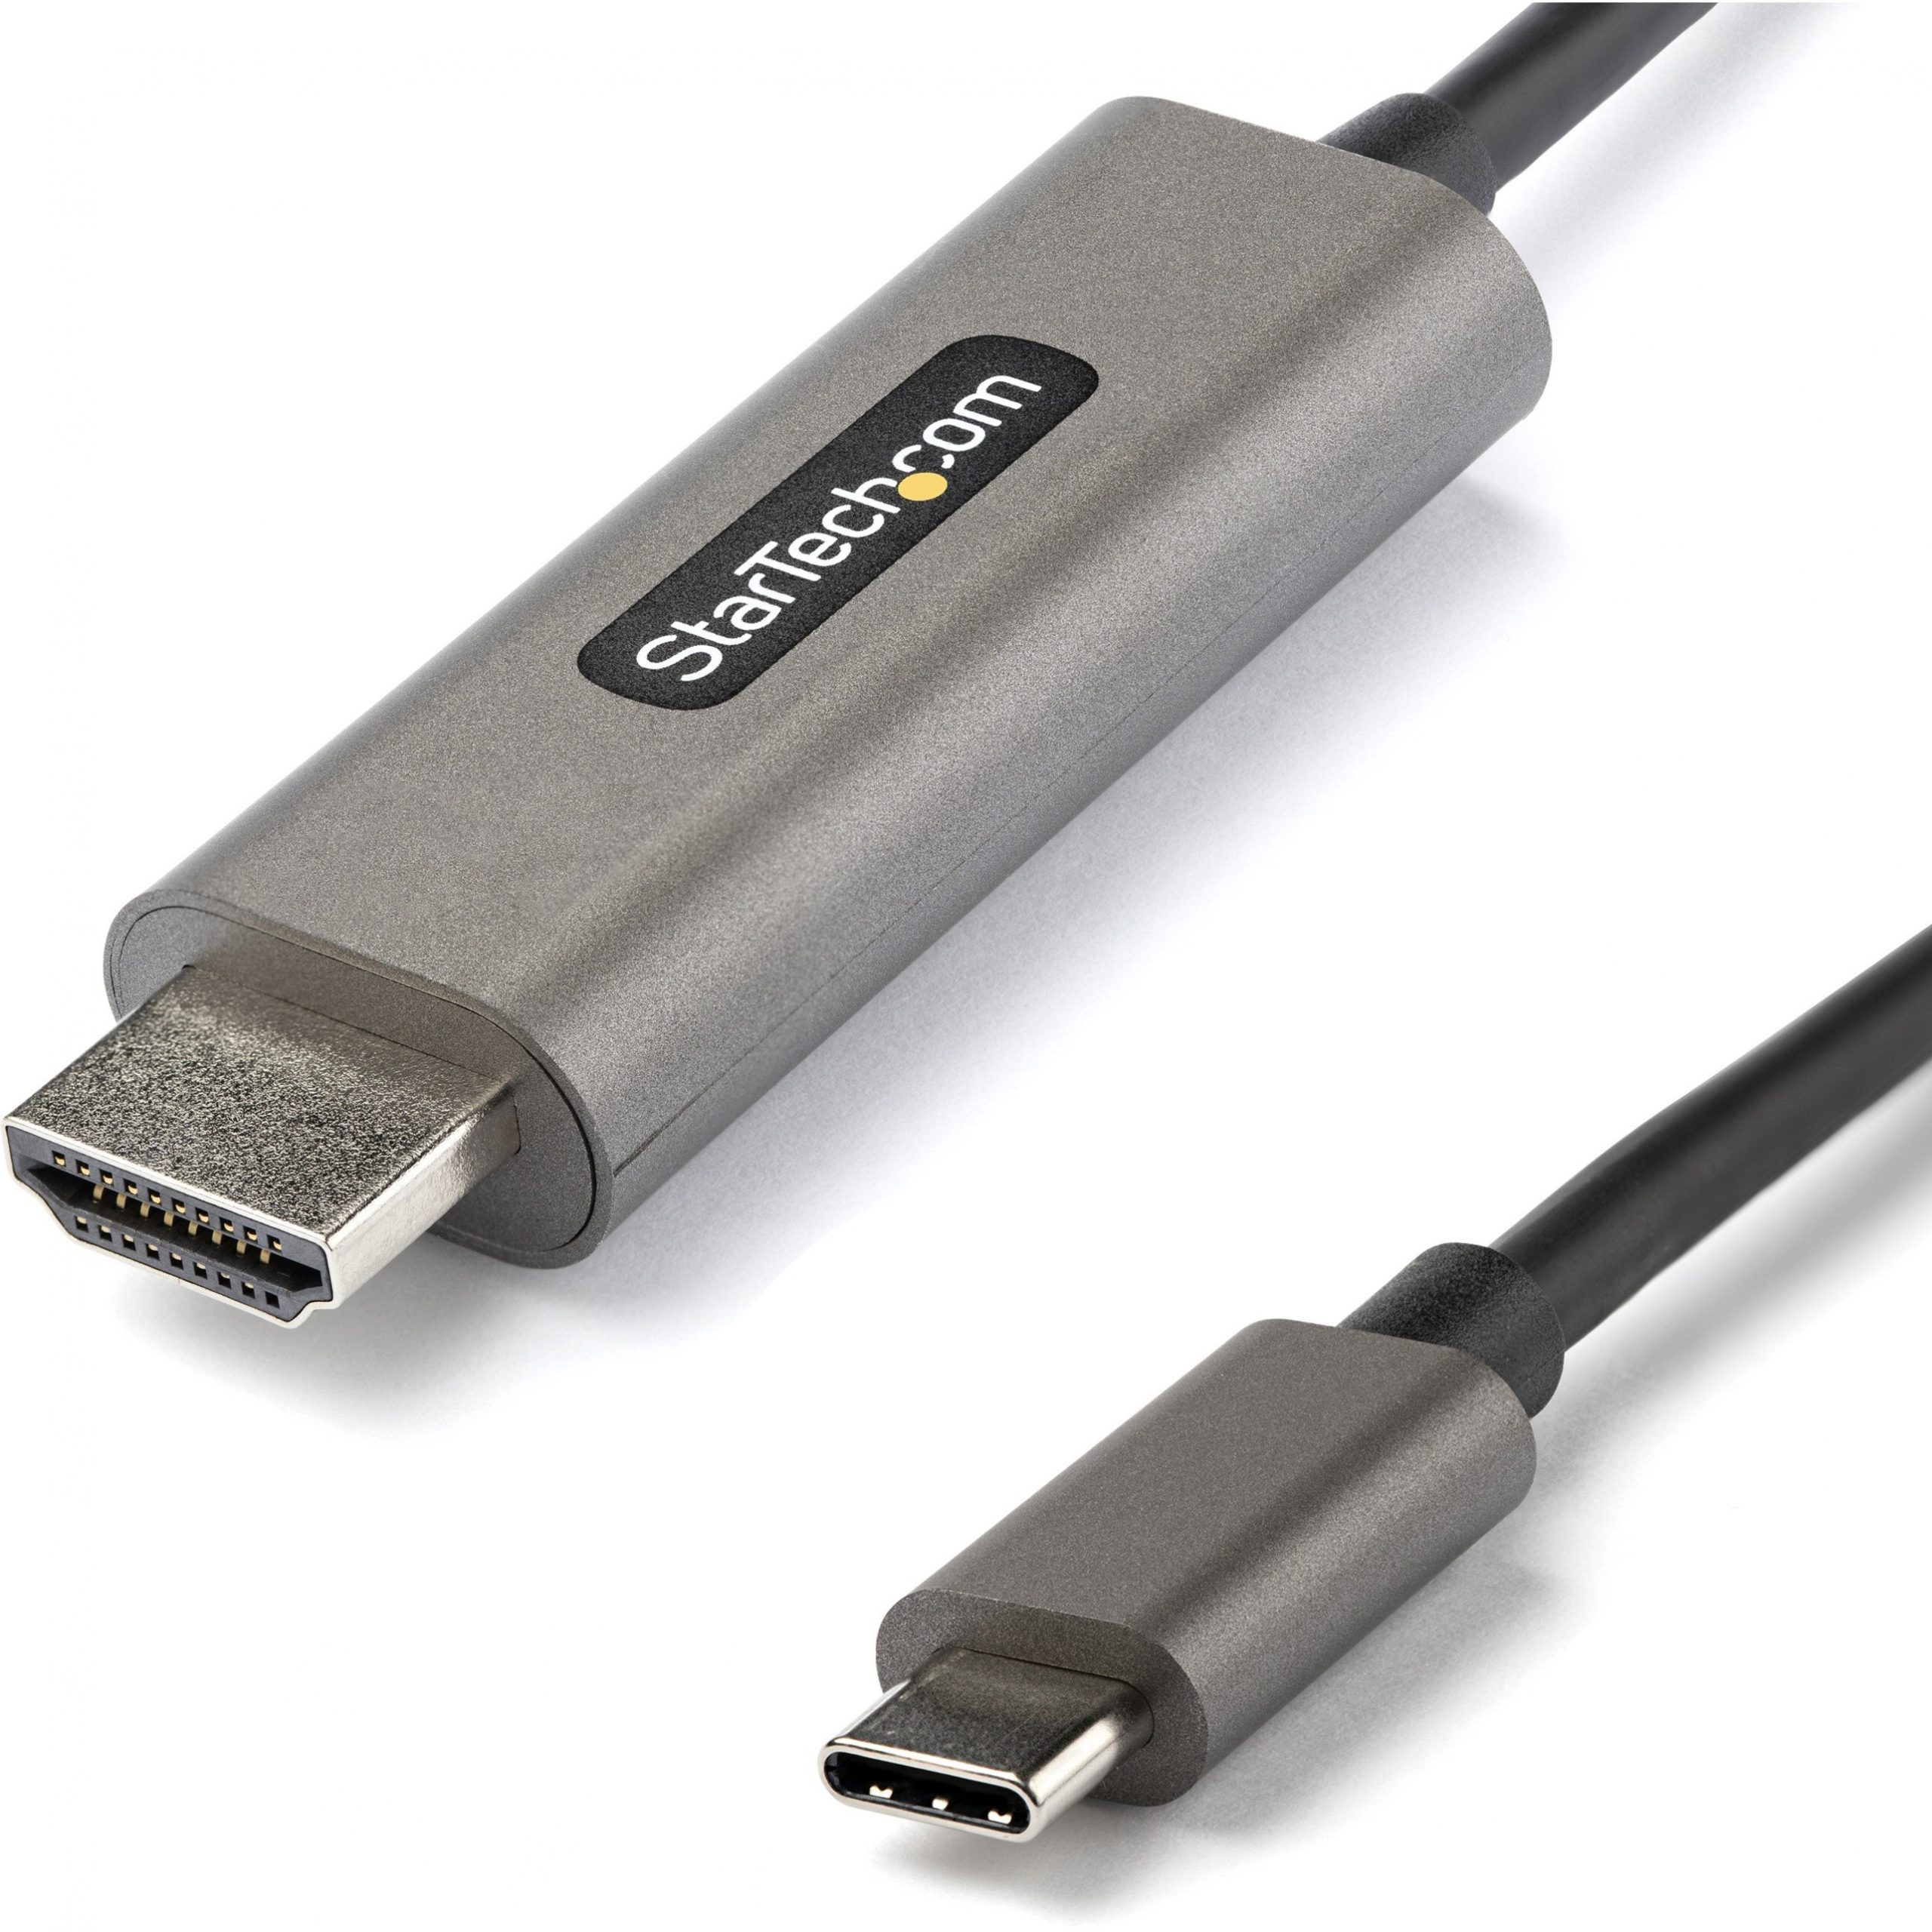 Cable 0,5m USB-C a USB-A USB 2.0 Tipo C - Cables USB-C